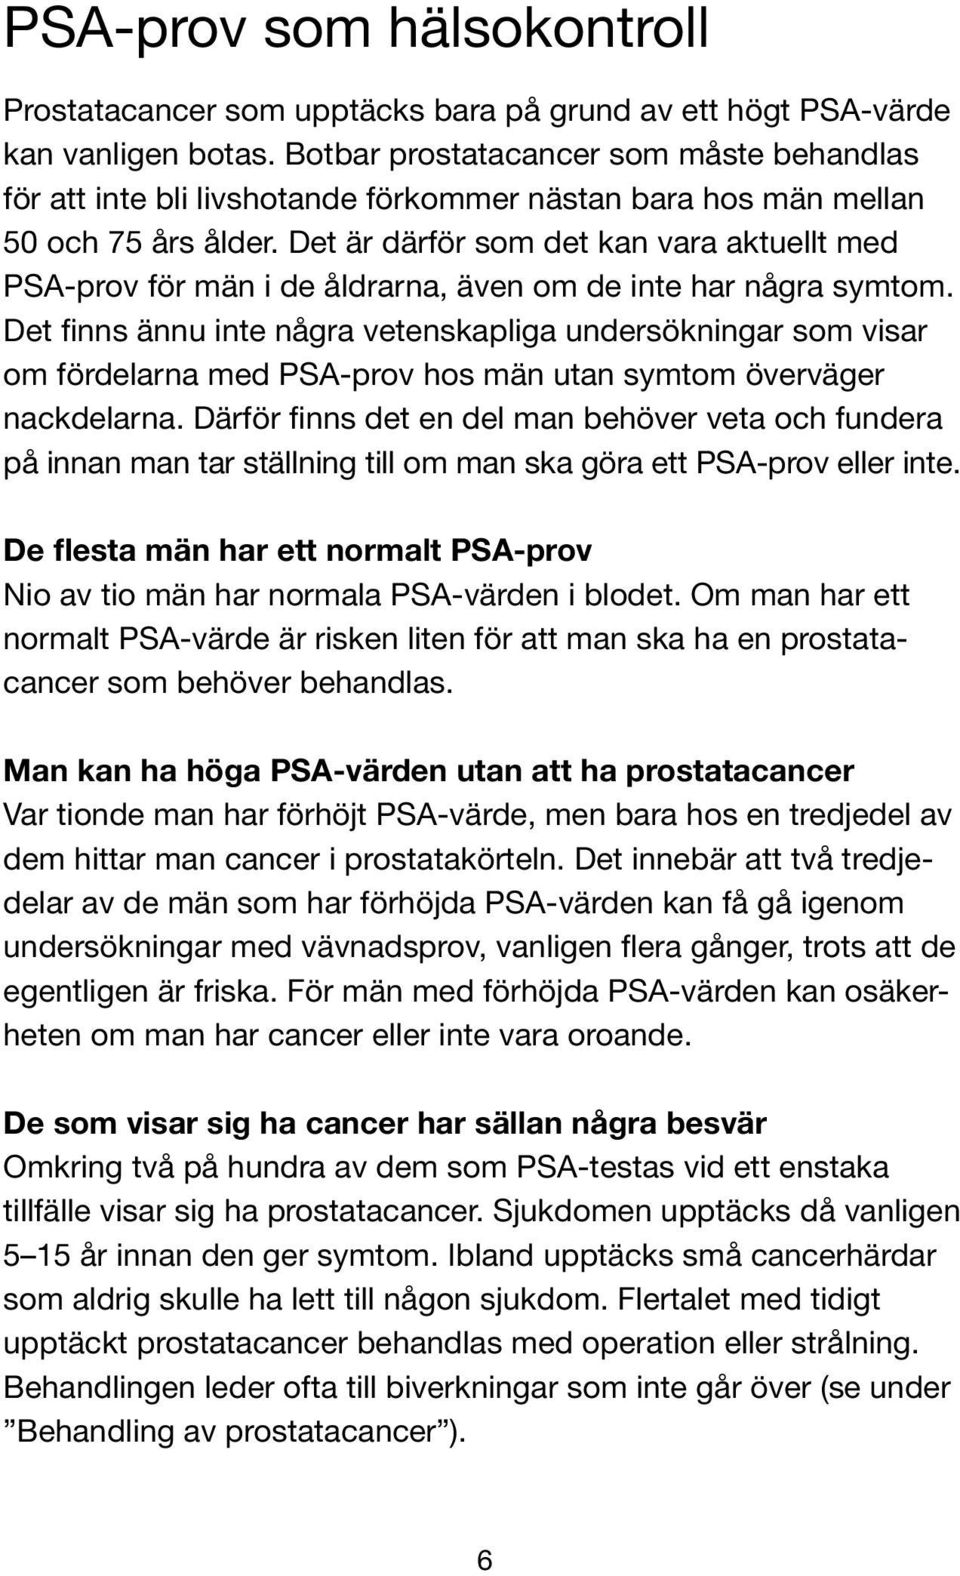 Det är därför som det kan vara aktuellt med PSA-prov för män i de åldrarna, även om de inte har några symtom.